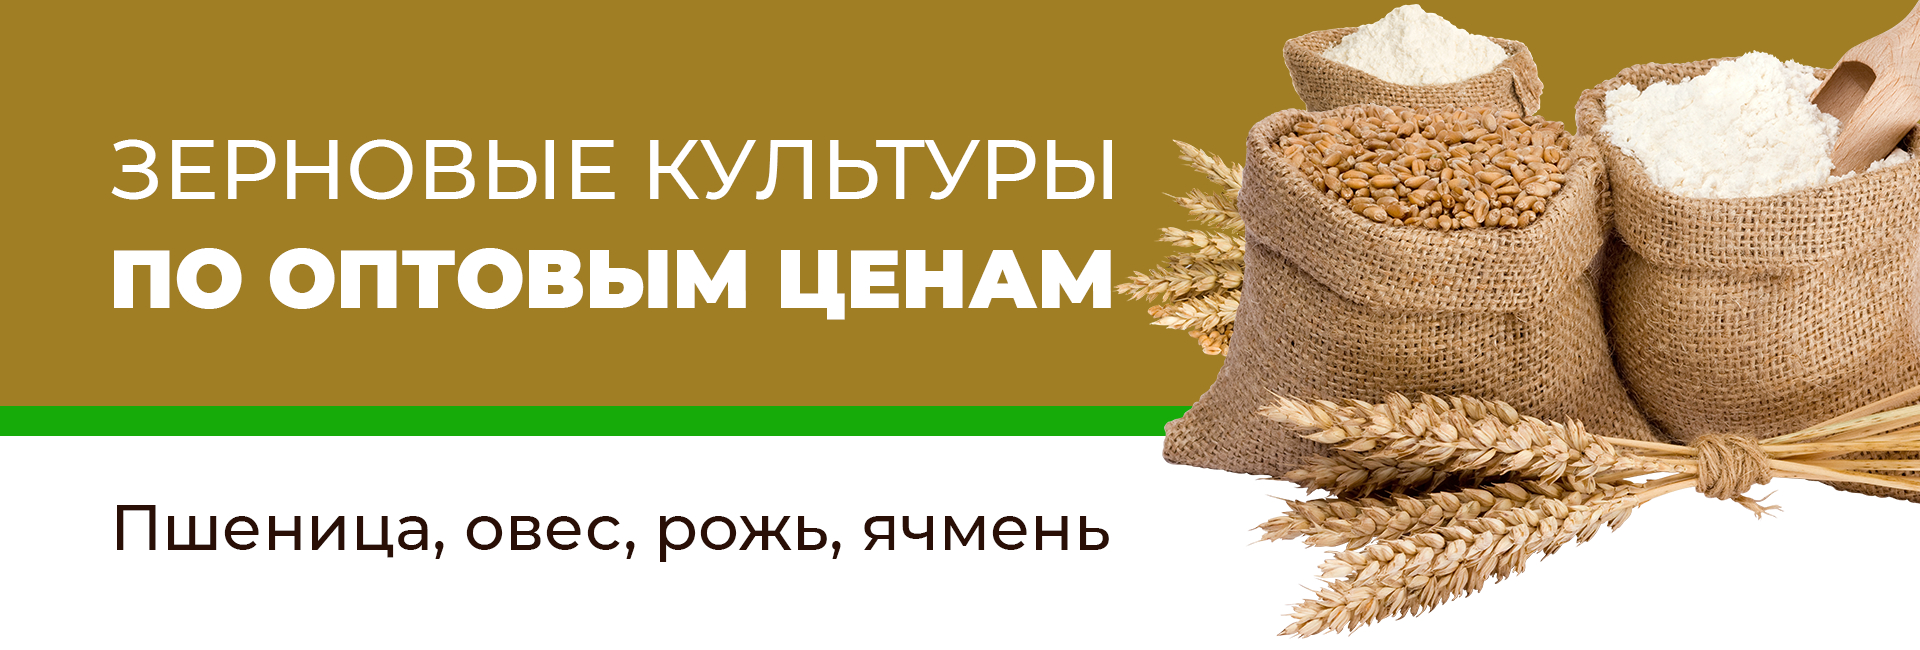 Купить зерно в новосибирске